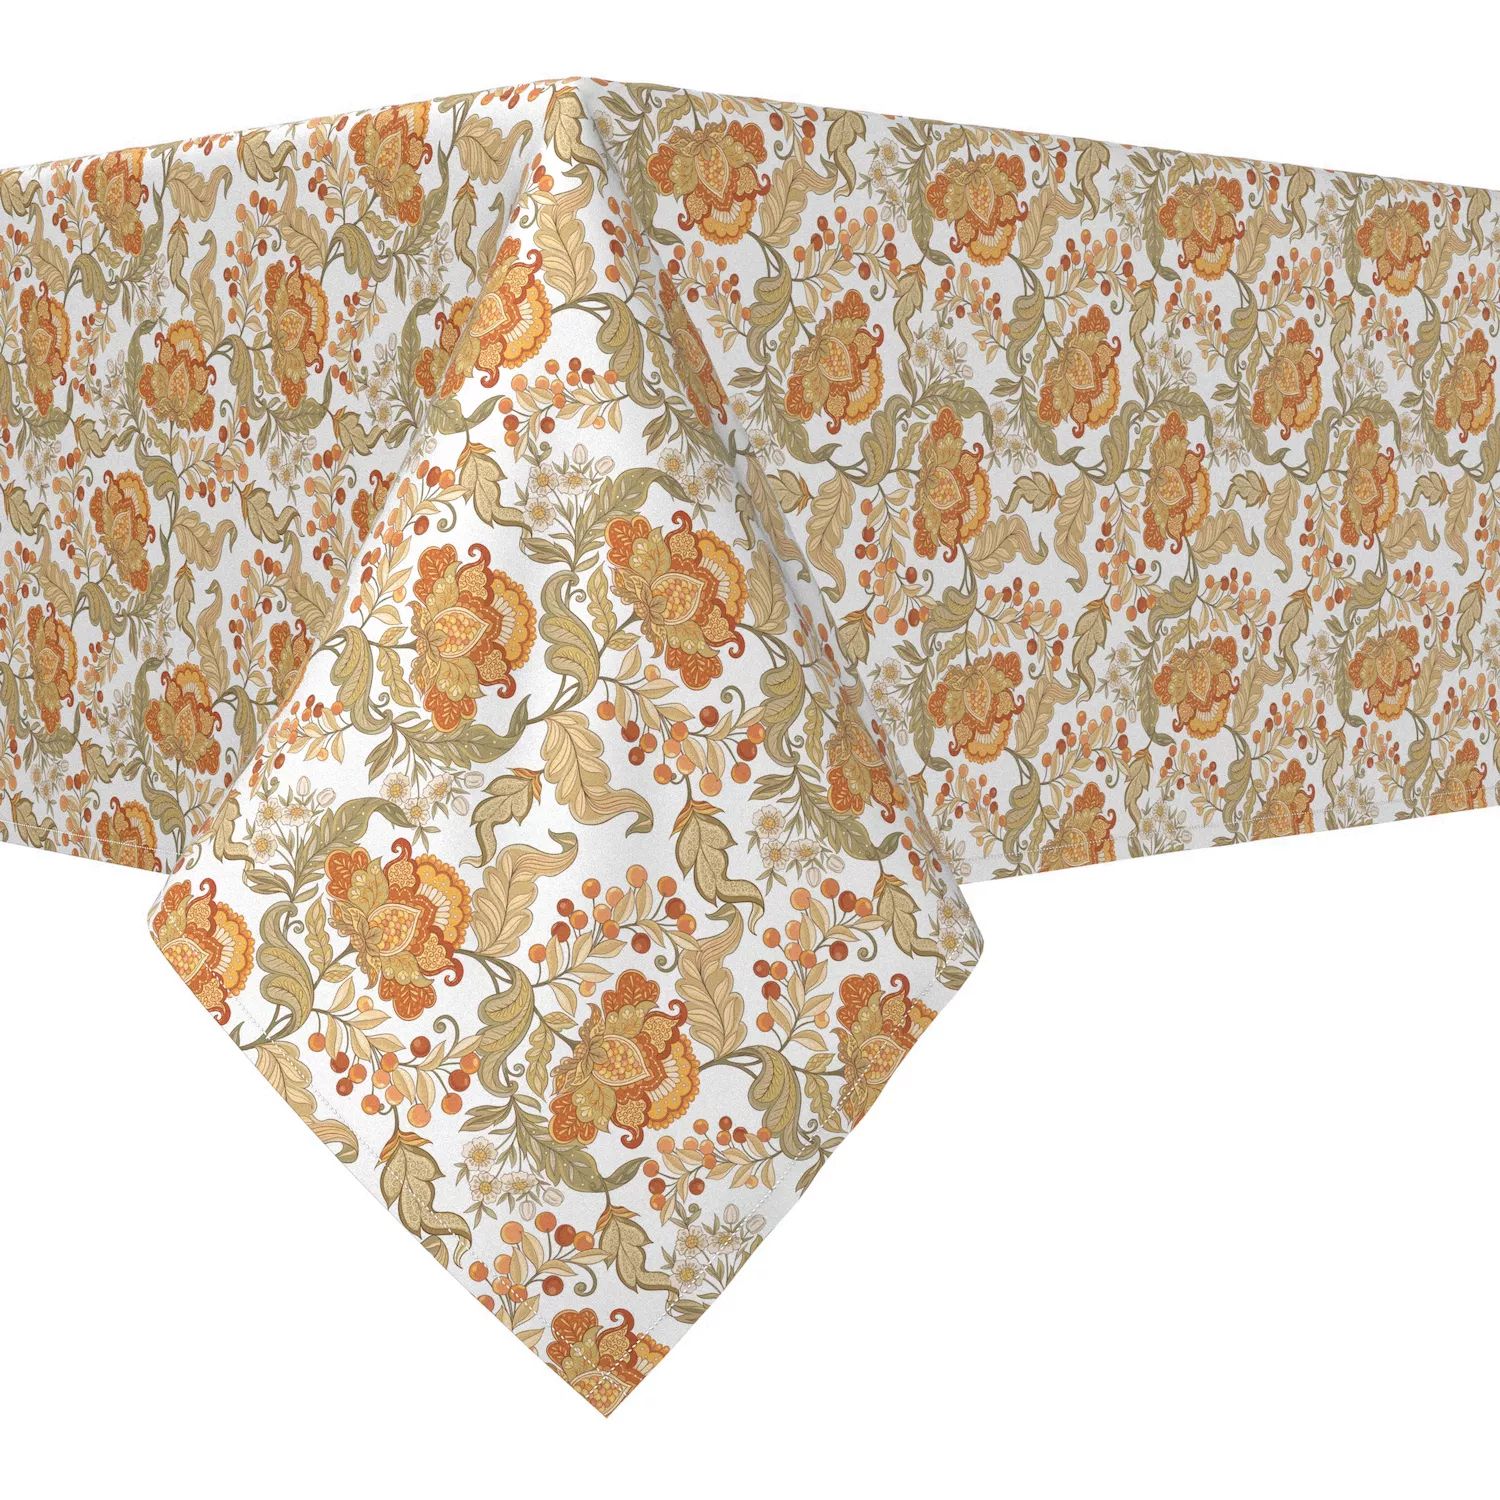 Прямоугольная скатерть, 100 % хлопок, 60x104 дюйма, с цветочным принтом в винтажном стиле. скатерть кружевная в винтажном стиле хлопковая скатерть в клетку прямоугольная для кухни столовой